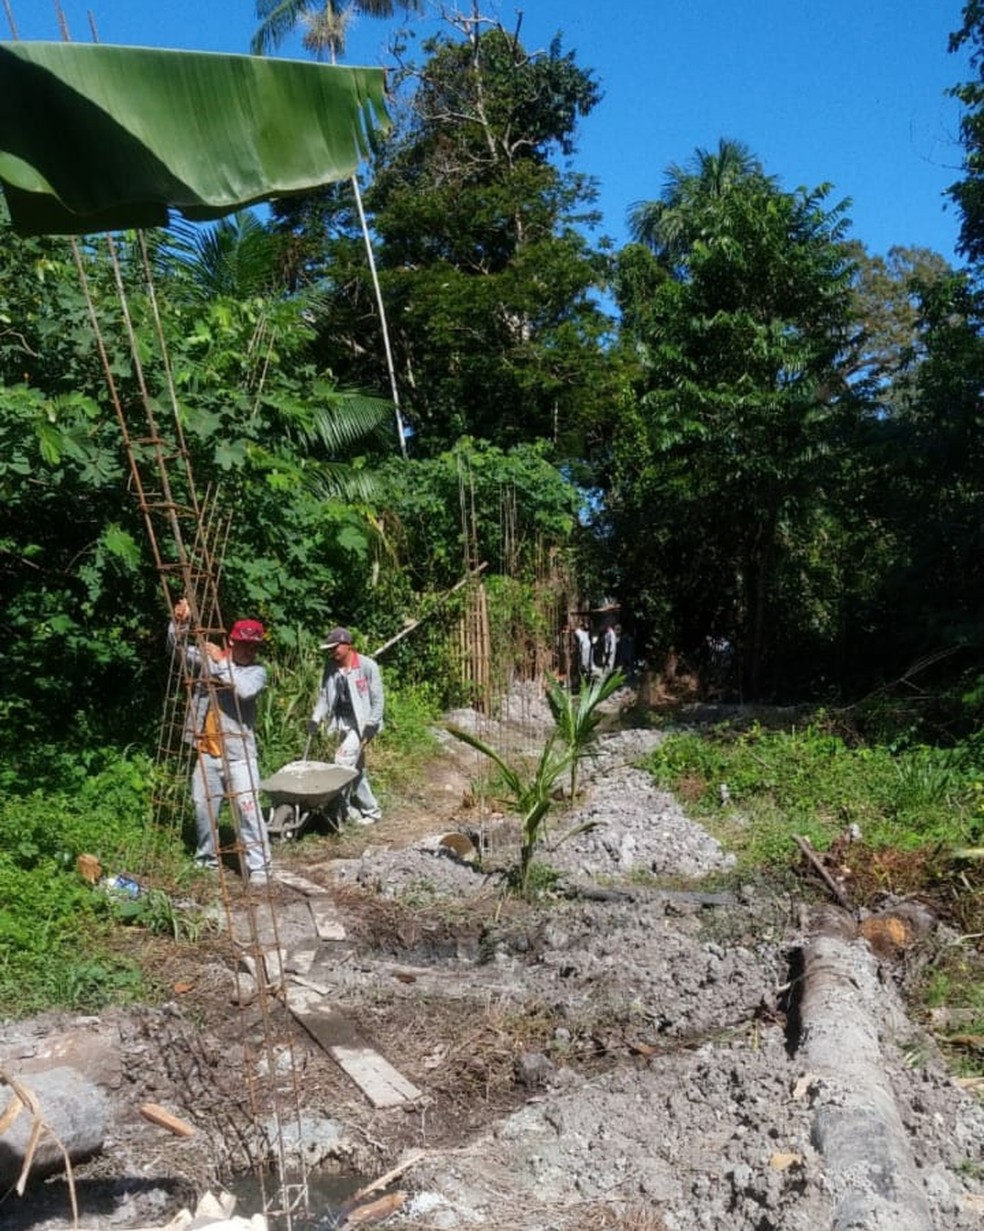 Muro do Parque Natural de Barcarena cortou território quilombola e impediu acesso da comunidade a rio Murucupi, que corta o quilombo, dizem moradores. — Foto: Roberto Chipp